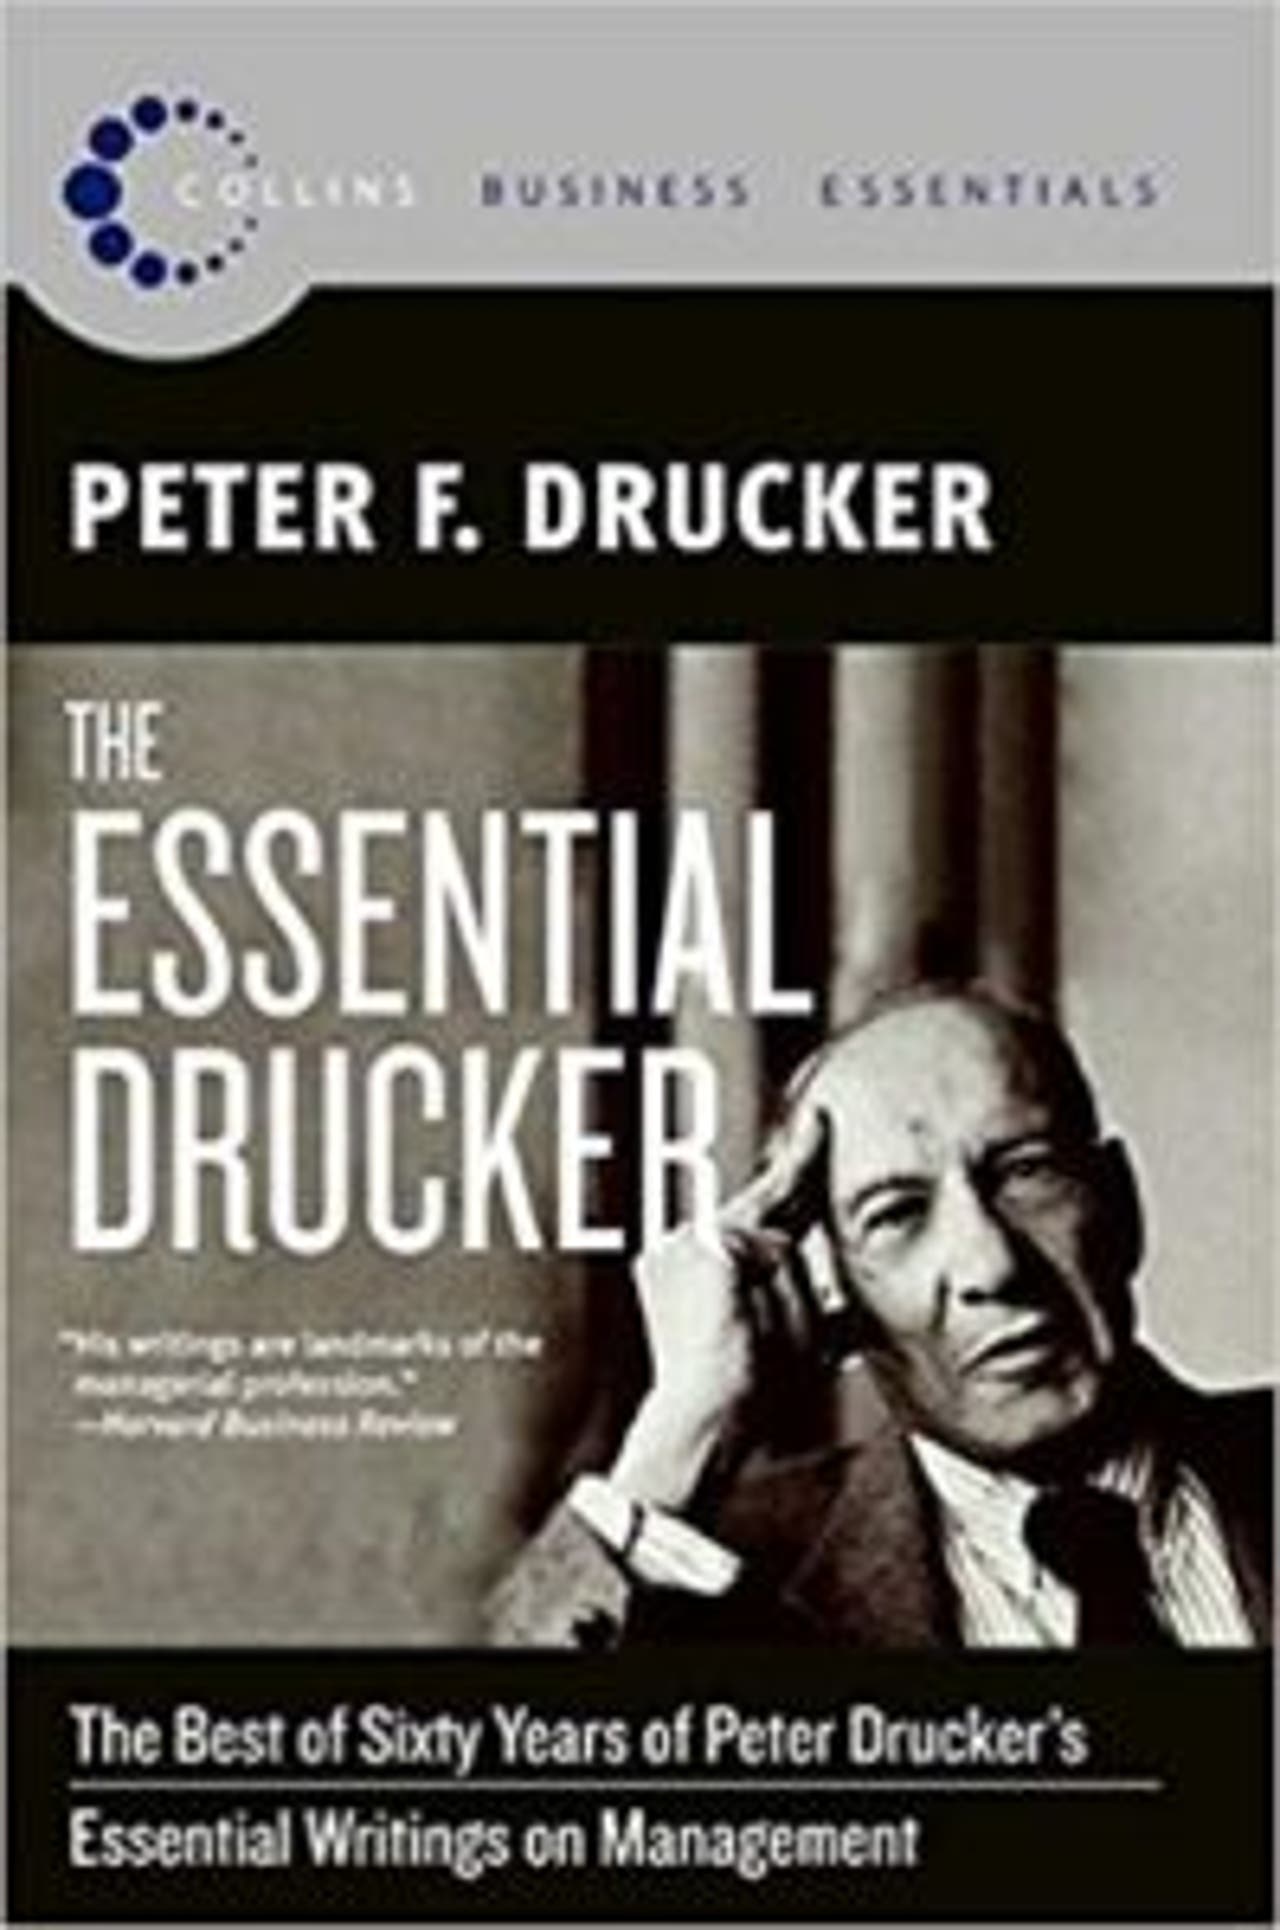 The Essential Drucker by Peter F. Drucker